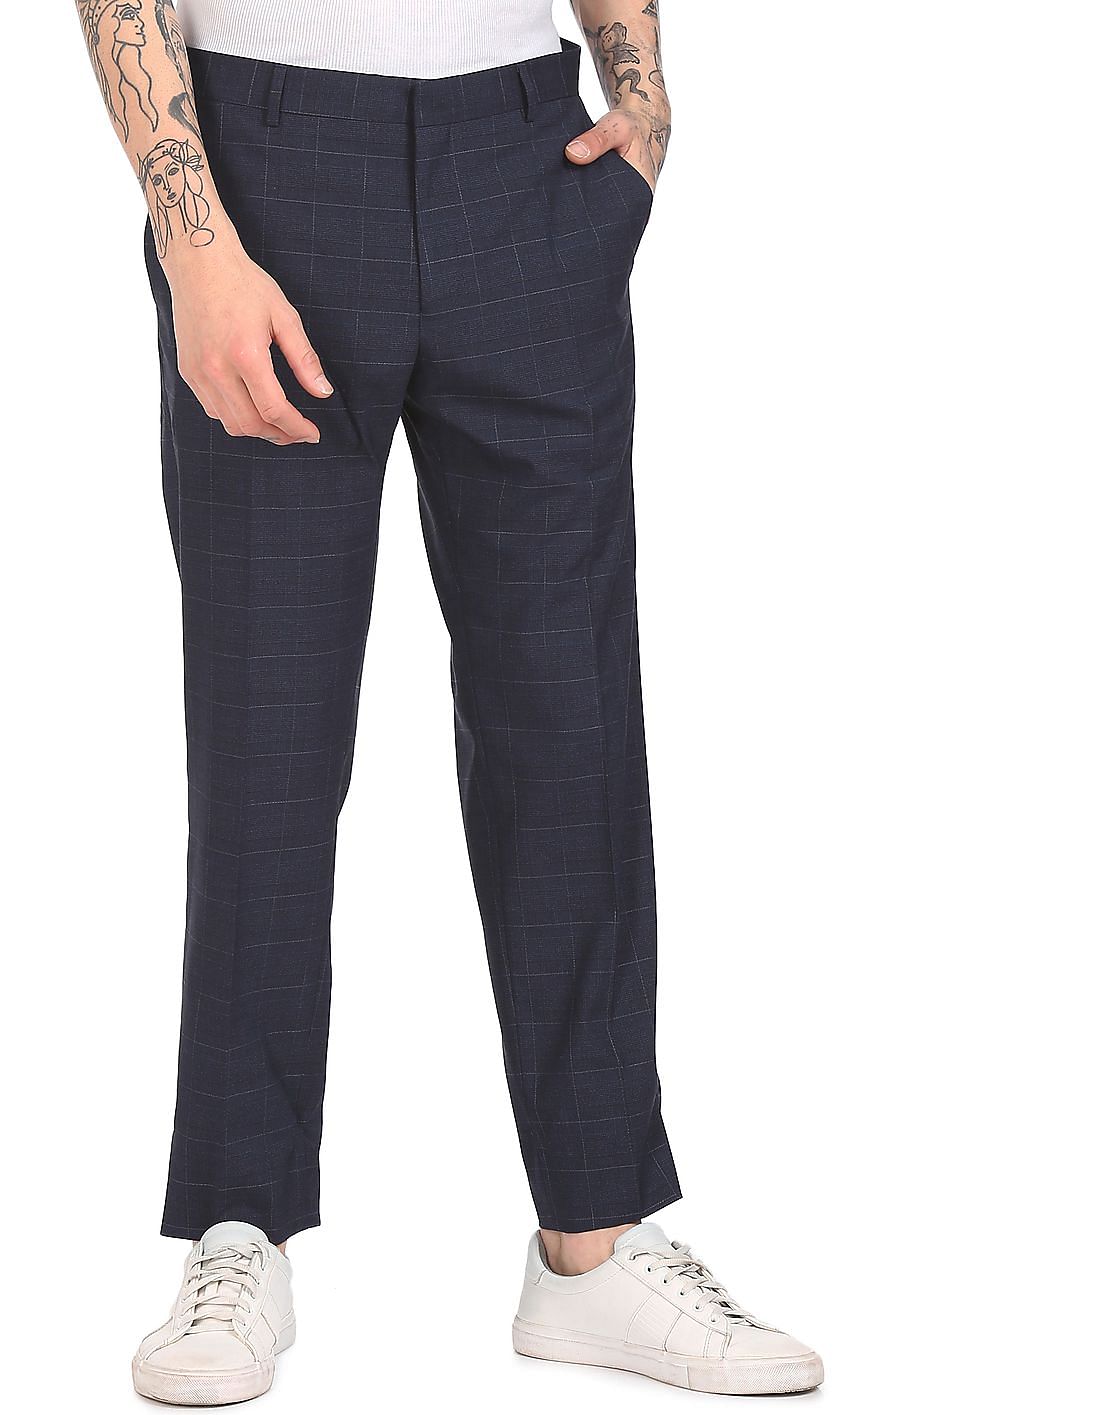 Fashion Men Dress Pants Casual Slim Plaid Pencil Pants Male Business Suit  Pant Wedding Check Trousers